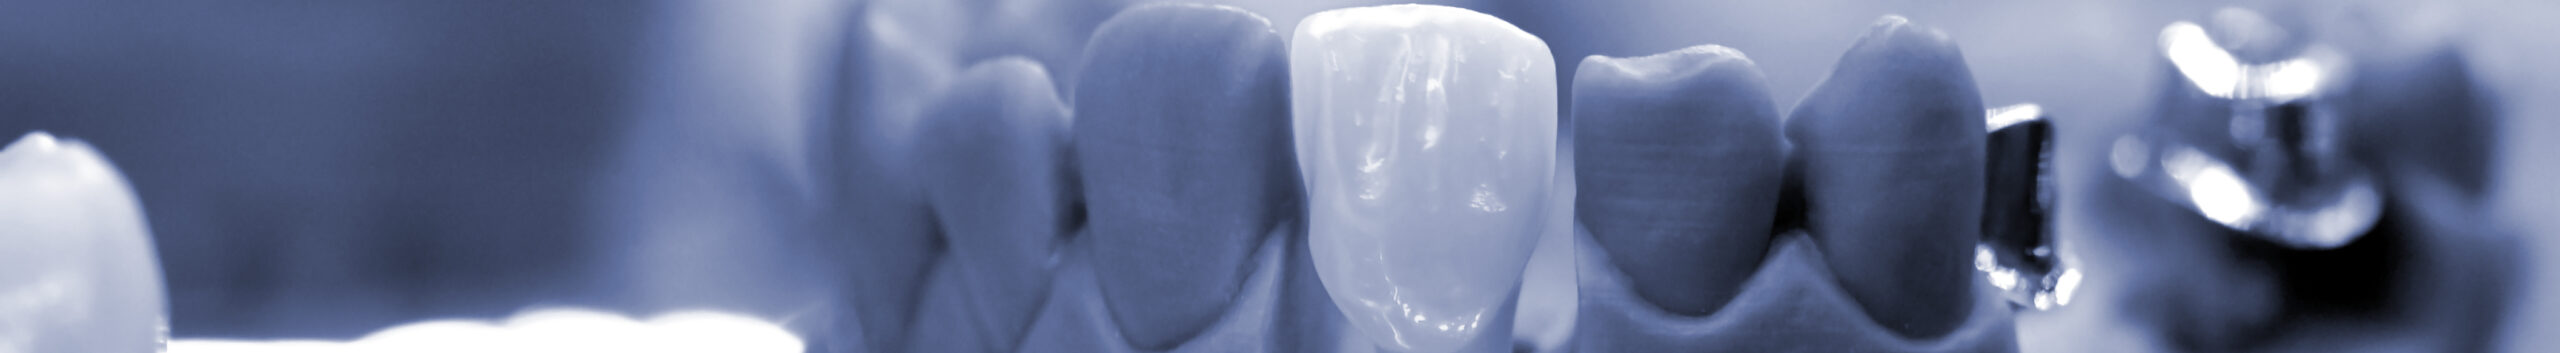 Преимущества лечения в стоматологии «Мастодонт»